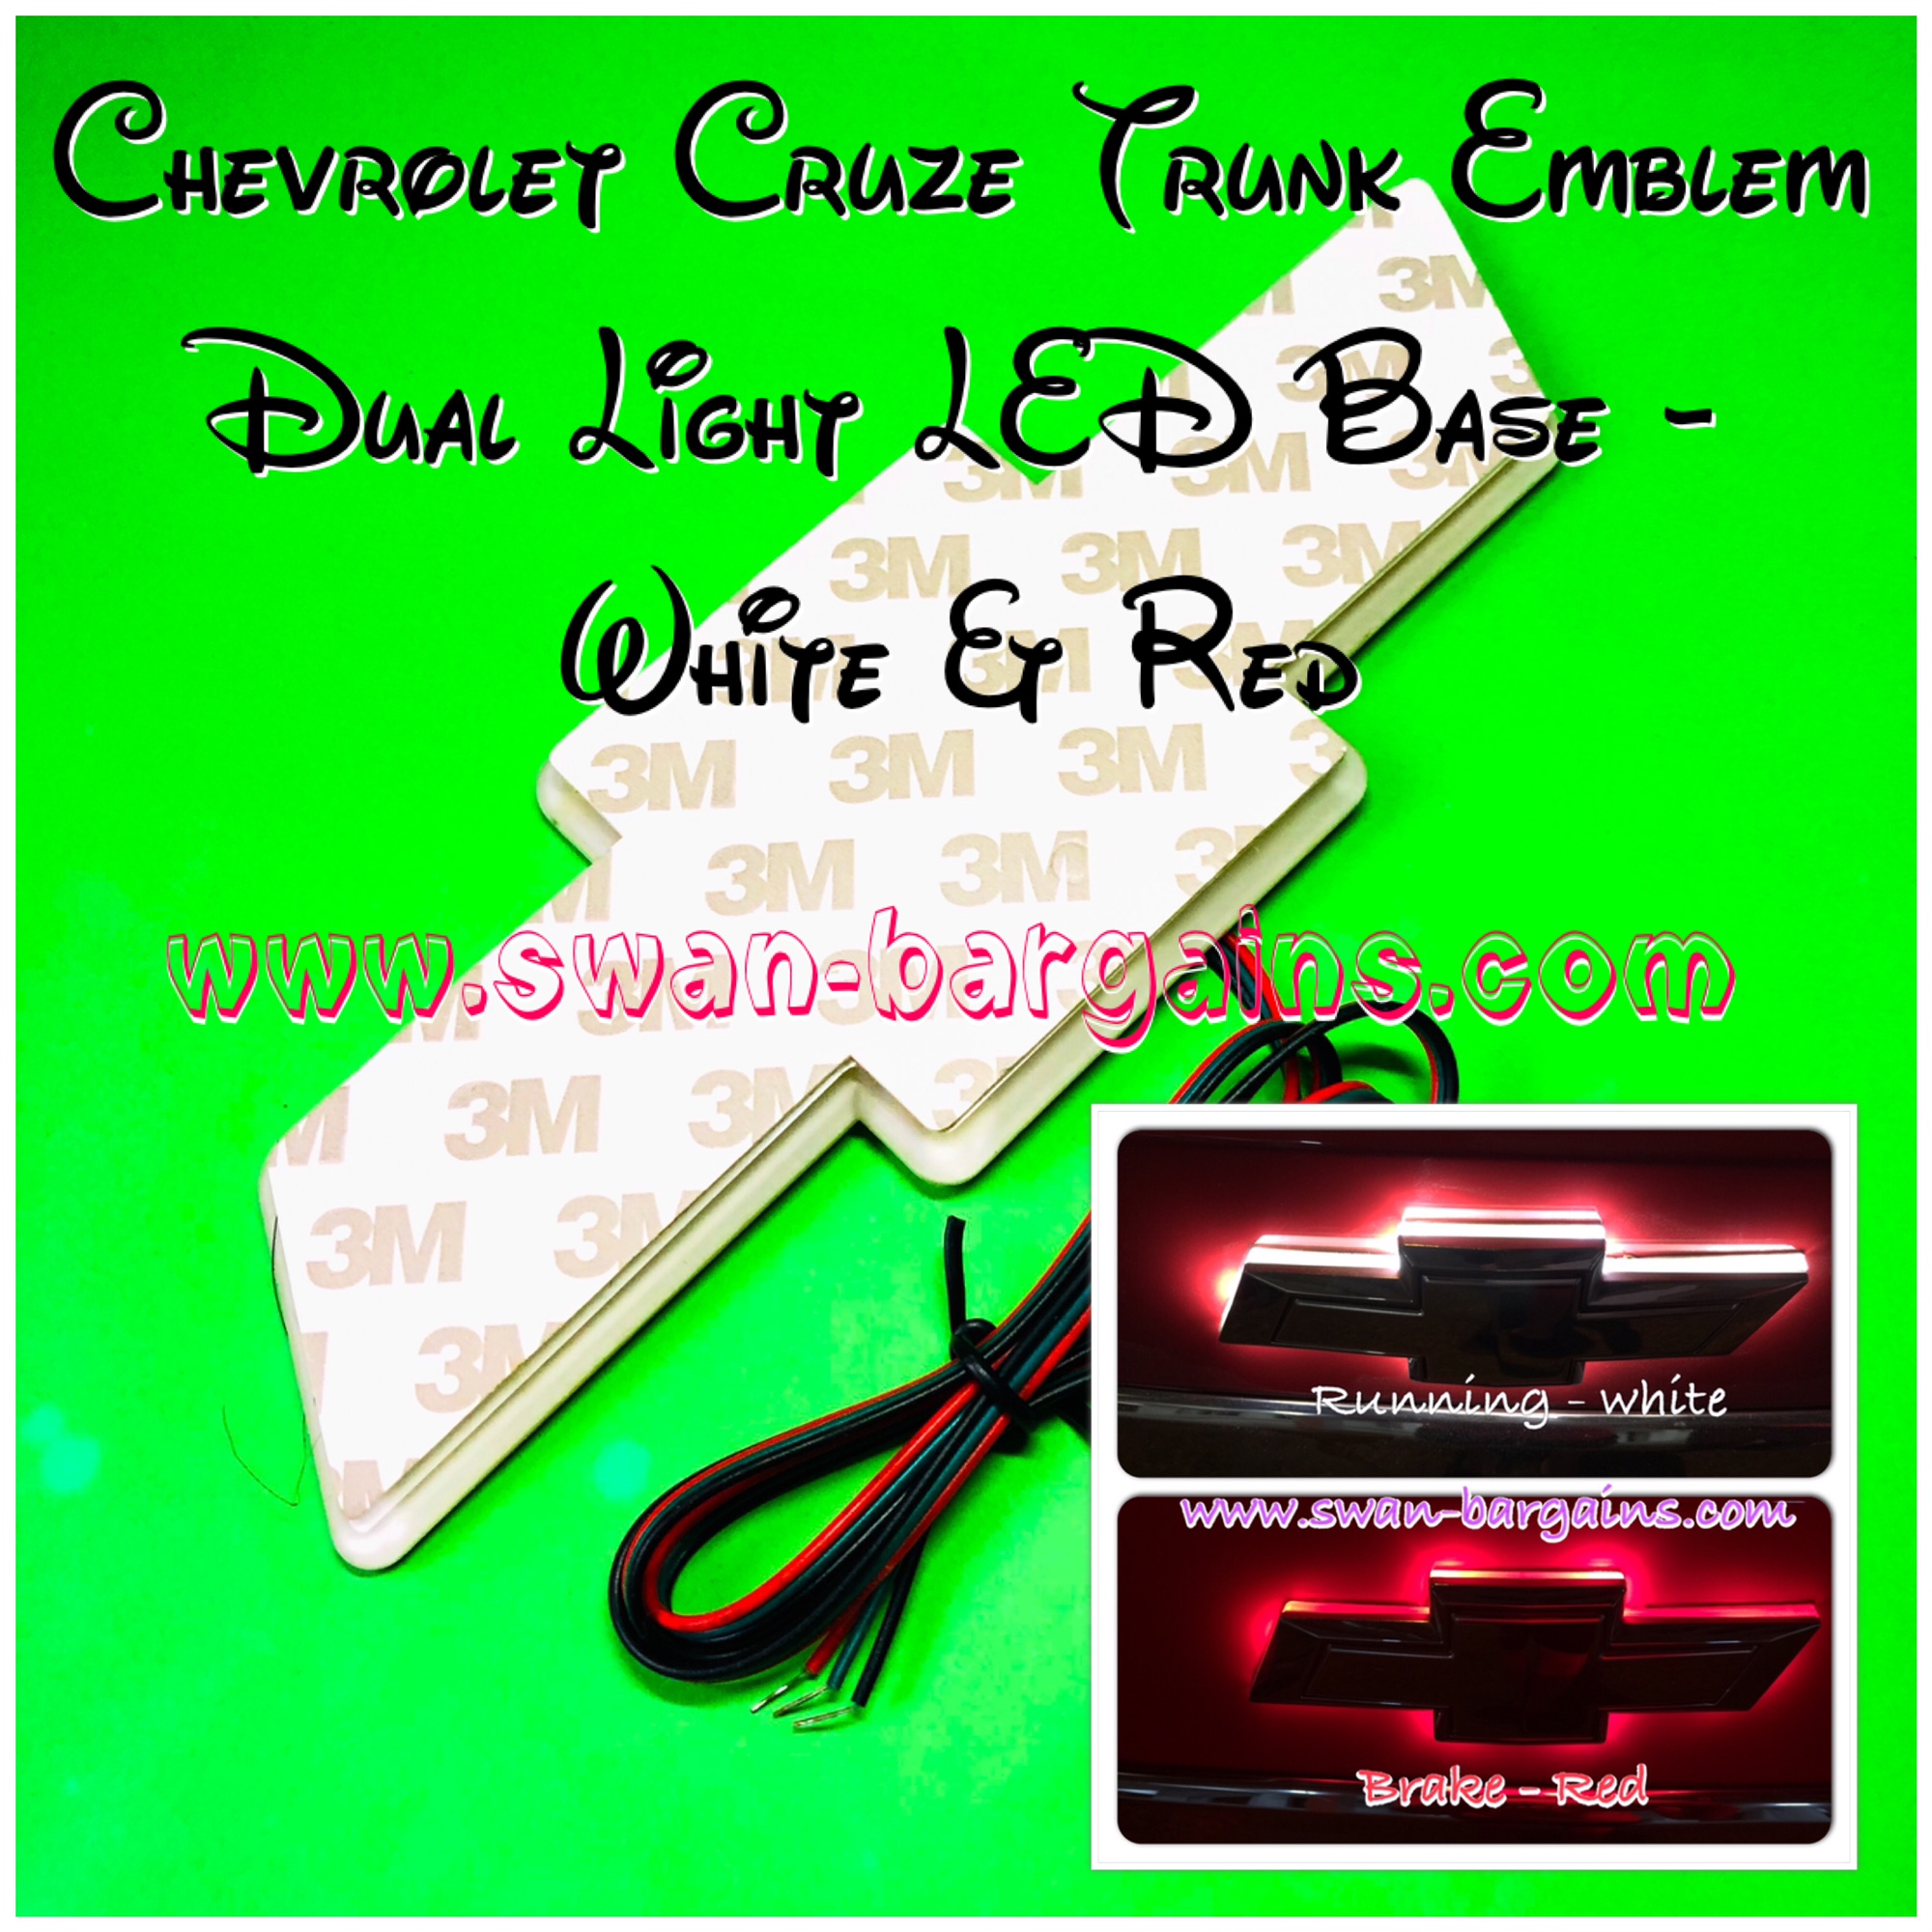 Chevrolet Cruze Tail Emblem LED Illuminated Base Singapore - White Red LED Light